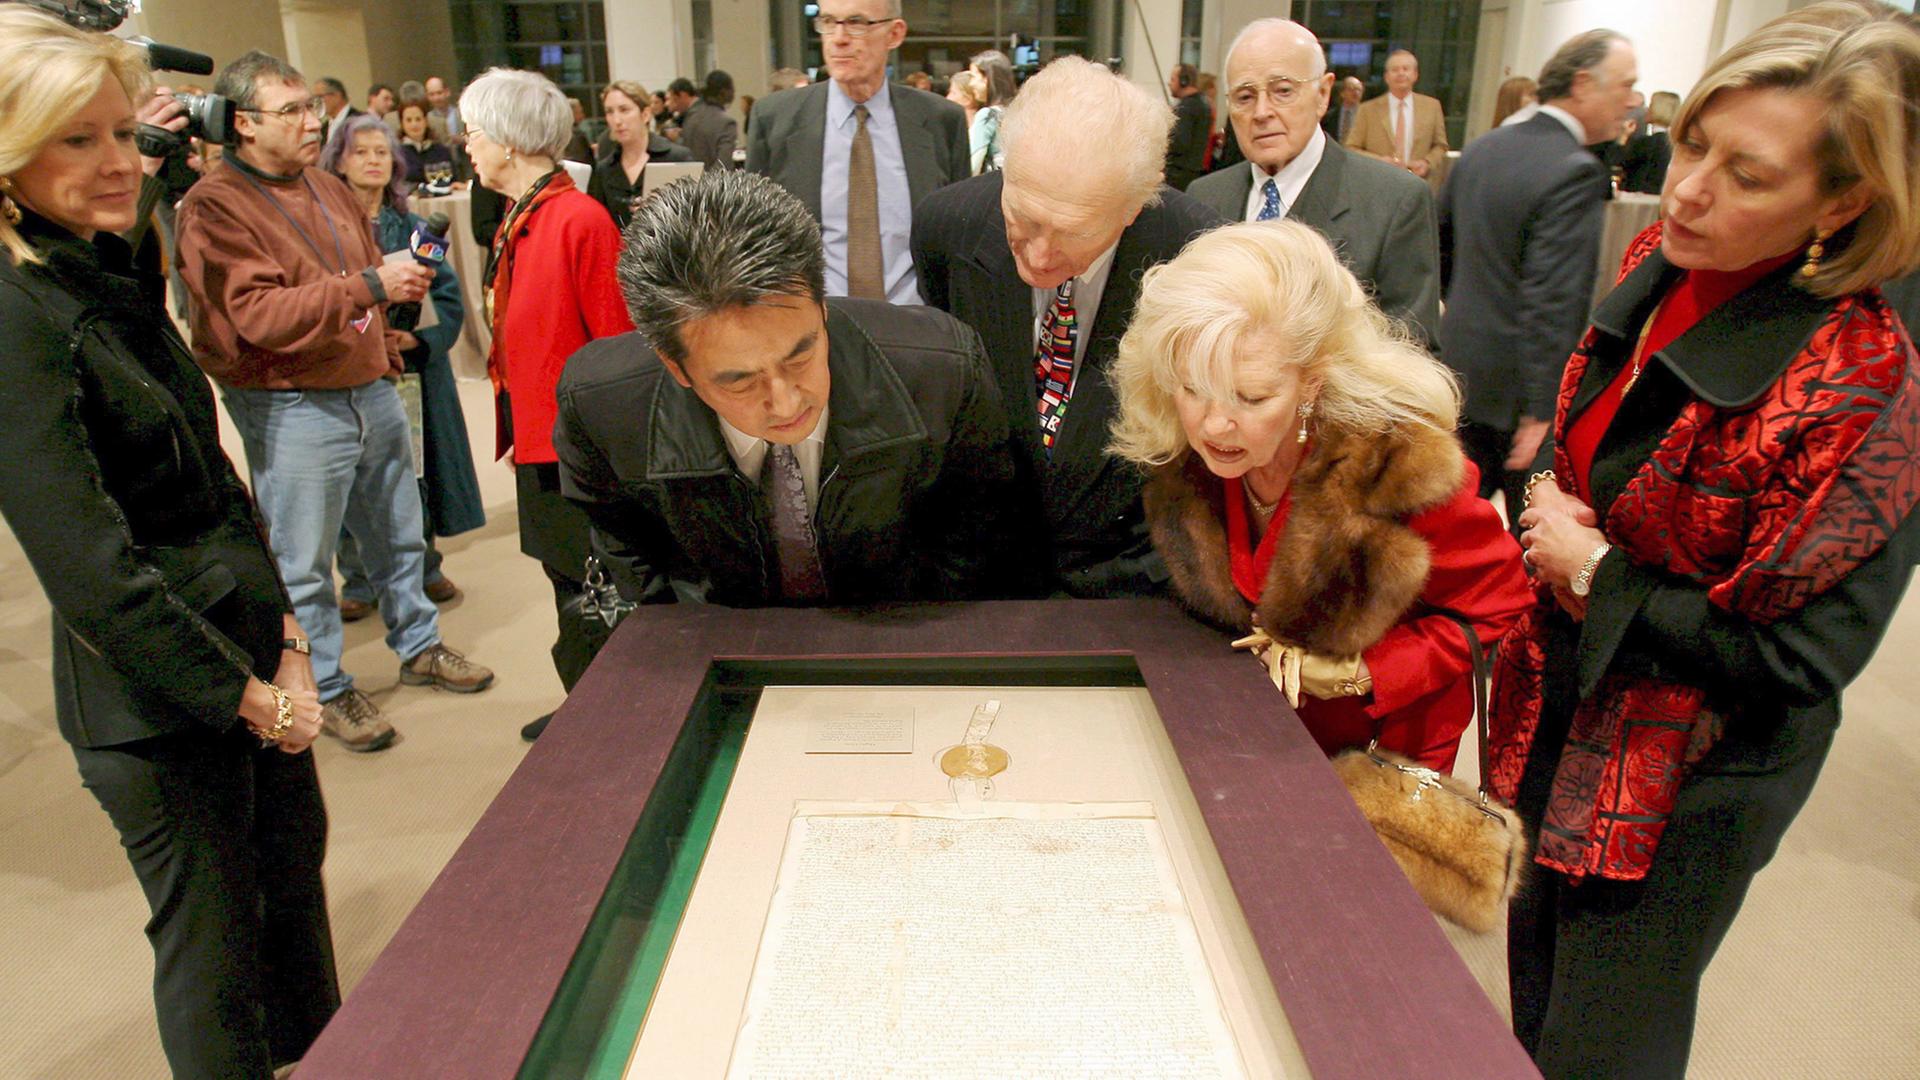 Besucher des Auktionshauses Sotheby's in New York beugen sich am 18.12.2007 über ein Exemplar der Magna Charta, bevor es dort versteigert wird.